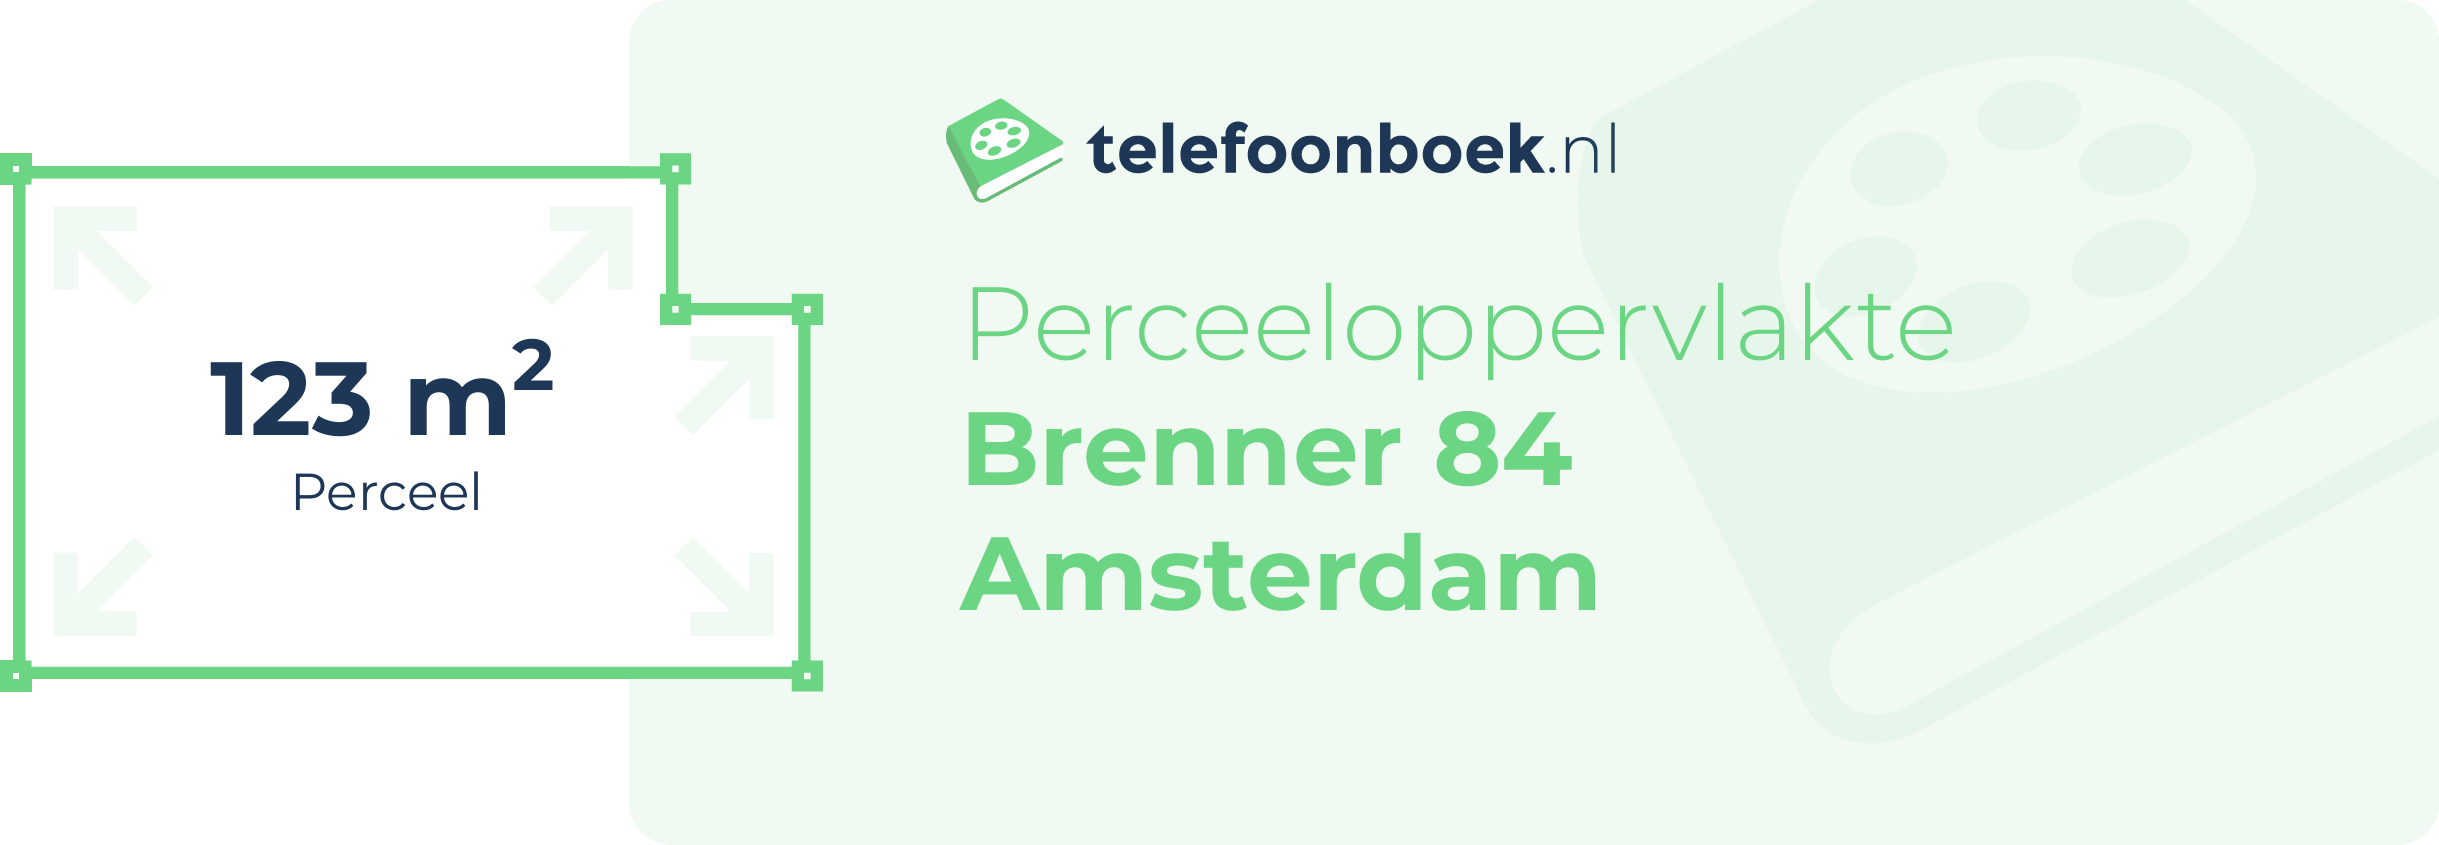 Perceeloppervlakte Brenner 84 Amsterdam